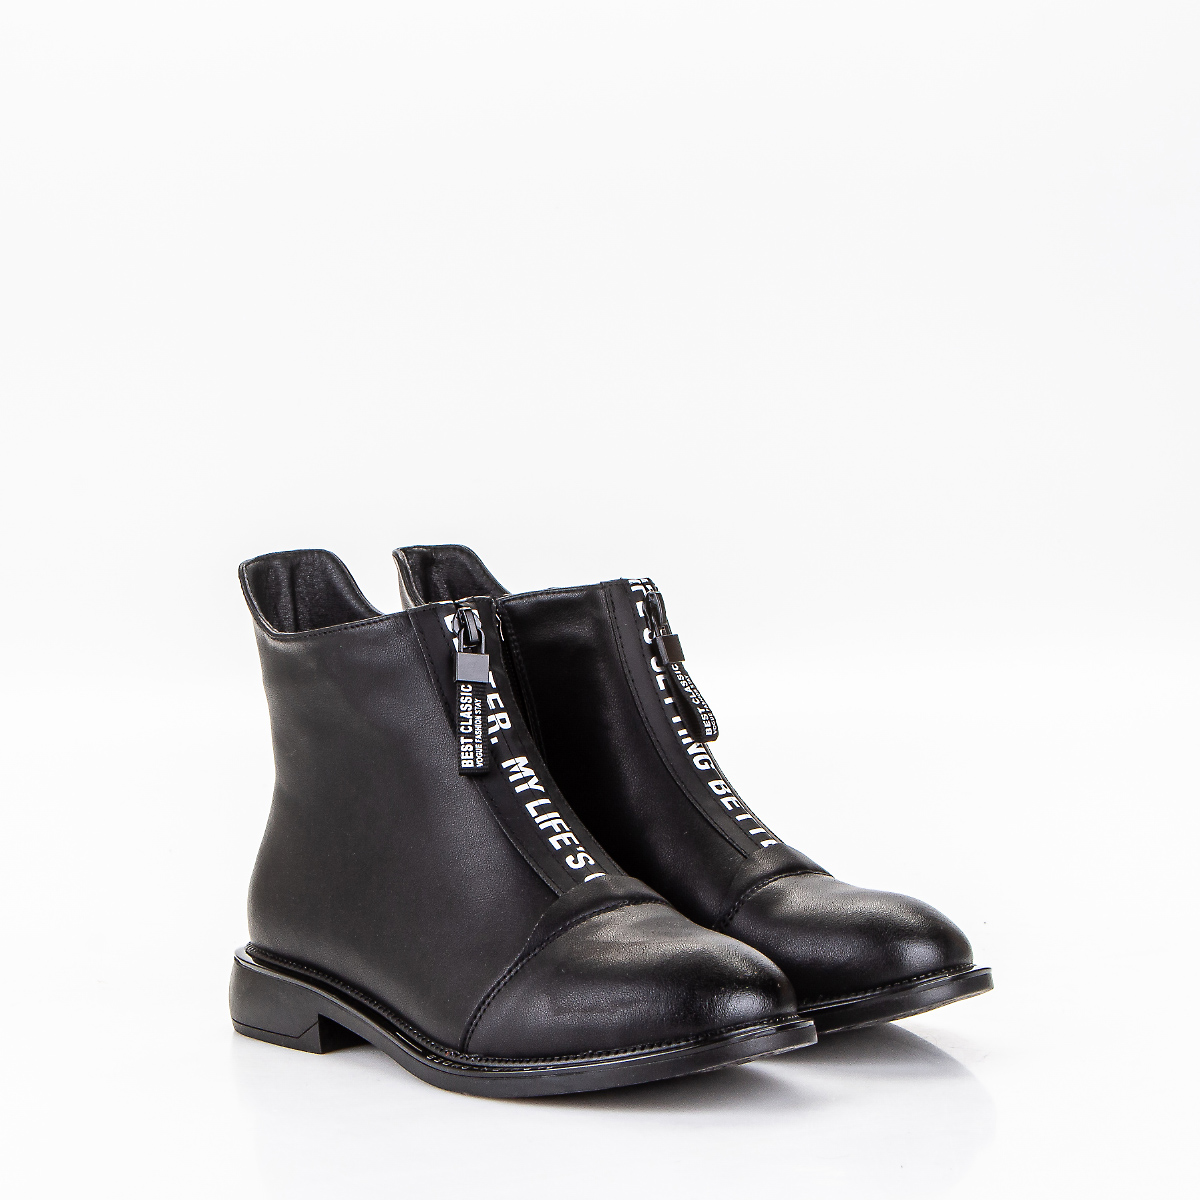 Фото Ботинки женские LA2 black купить на lauf.shoes